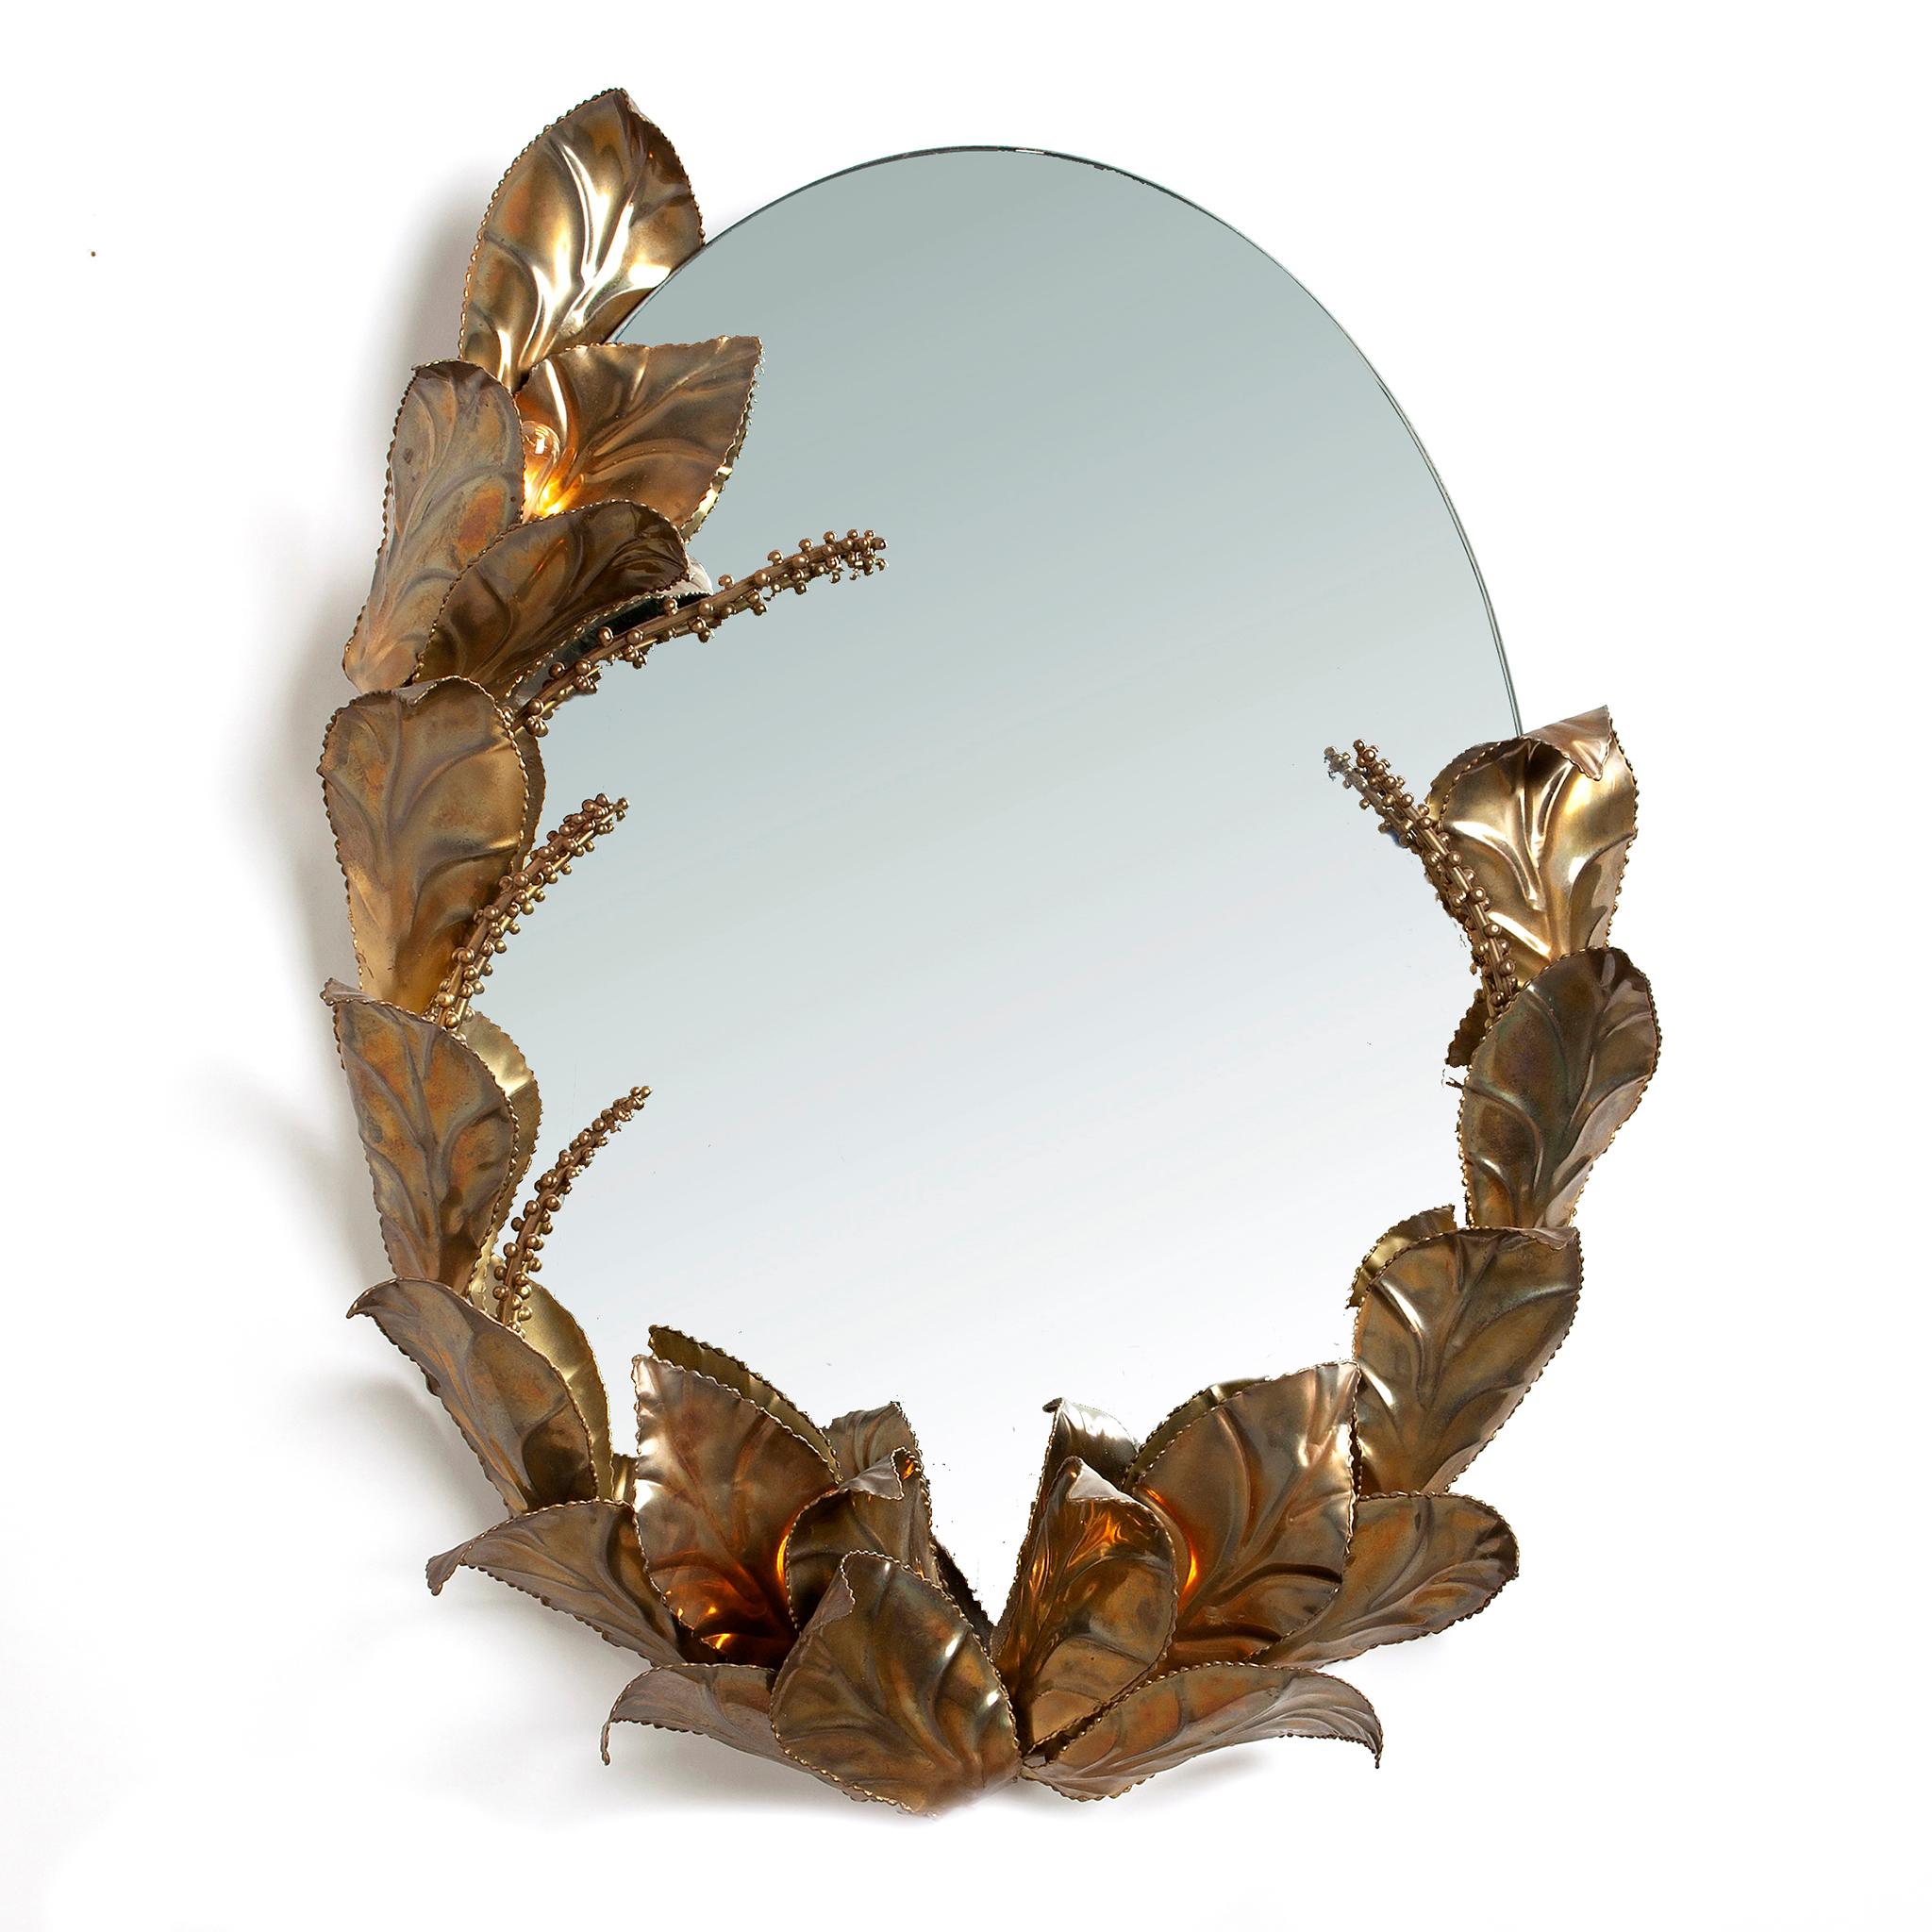 Ikonischer Spiegel aus Palmenmessing und zwei dazu passende Wandelemente, entworfen von Maison Jansen. 
Ein glamouröses Stück, das perfekt zu einer Wohnungseinrichtung im Hollywood-Regency-Stil passt. Mit ihren großen, metallisch goldenen Blättern